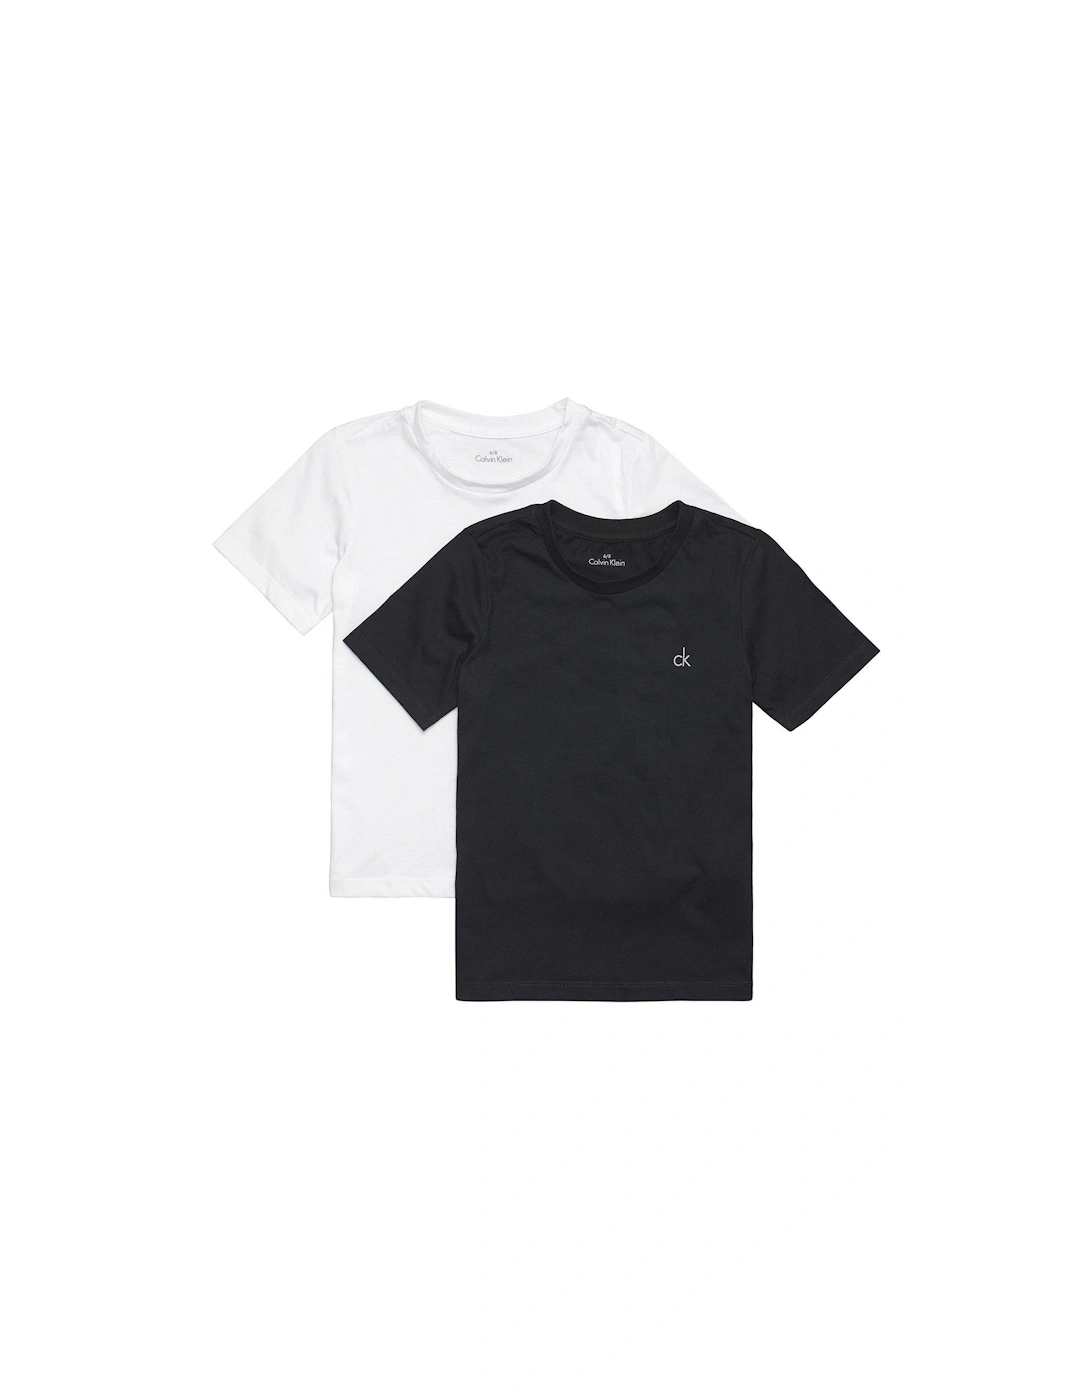 Boys 2 Pack Short Sleeve Logo T-shirt - Black/white, 2 of 1